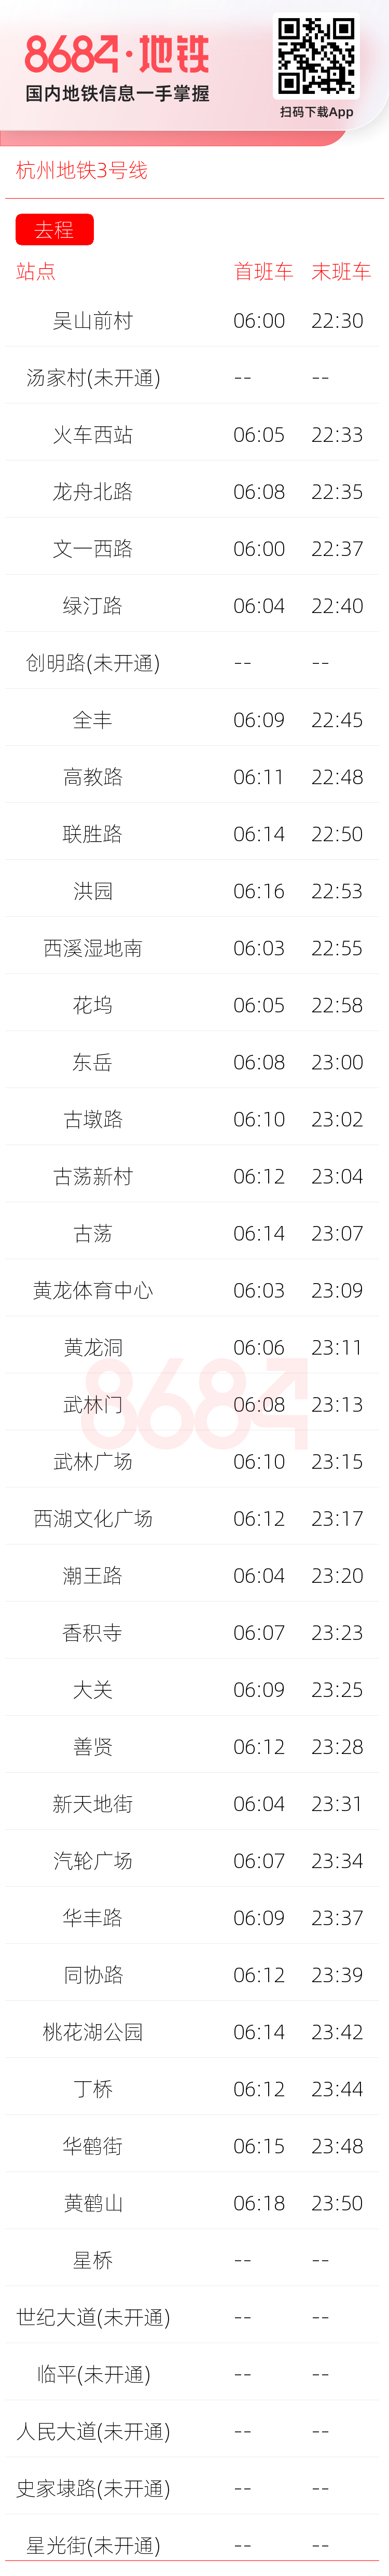 杭州地铁3号线运营时间表